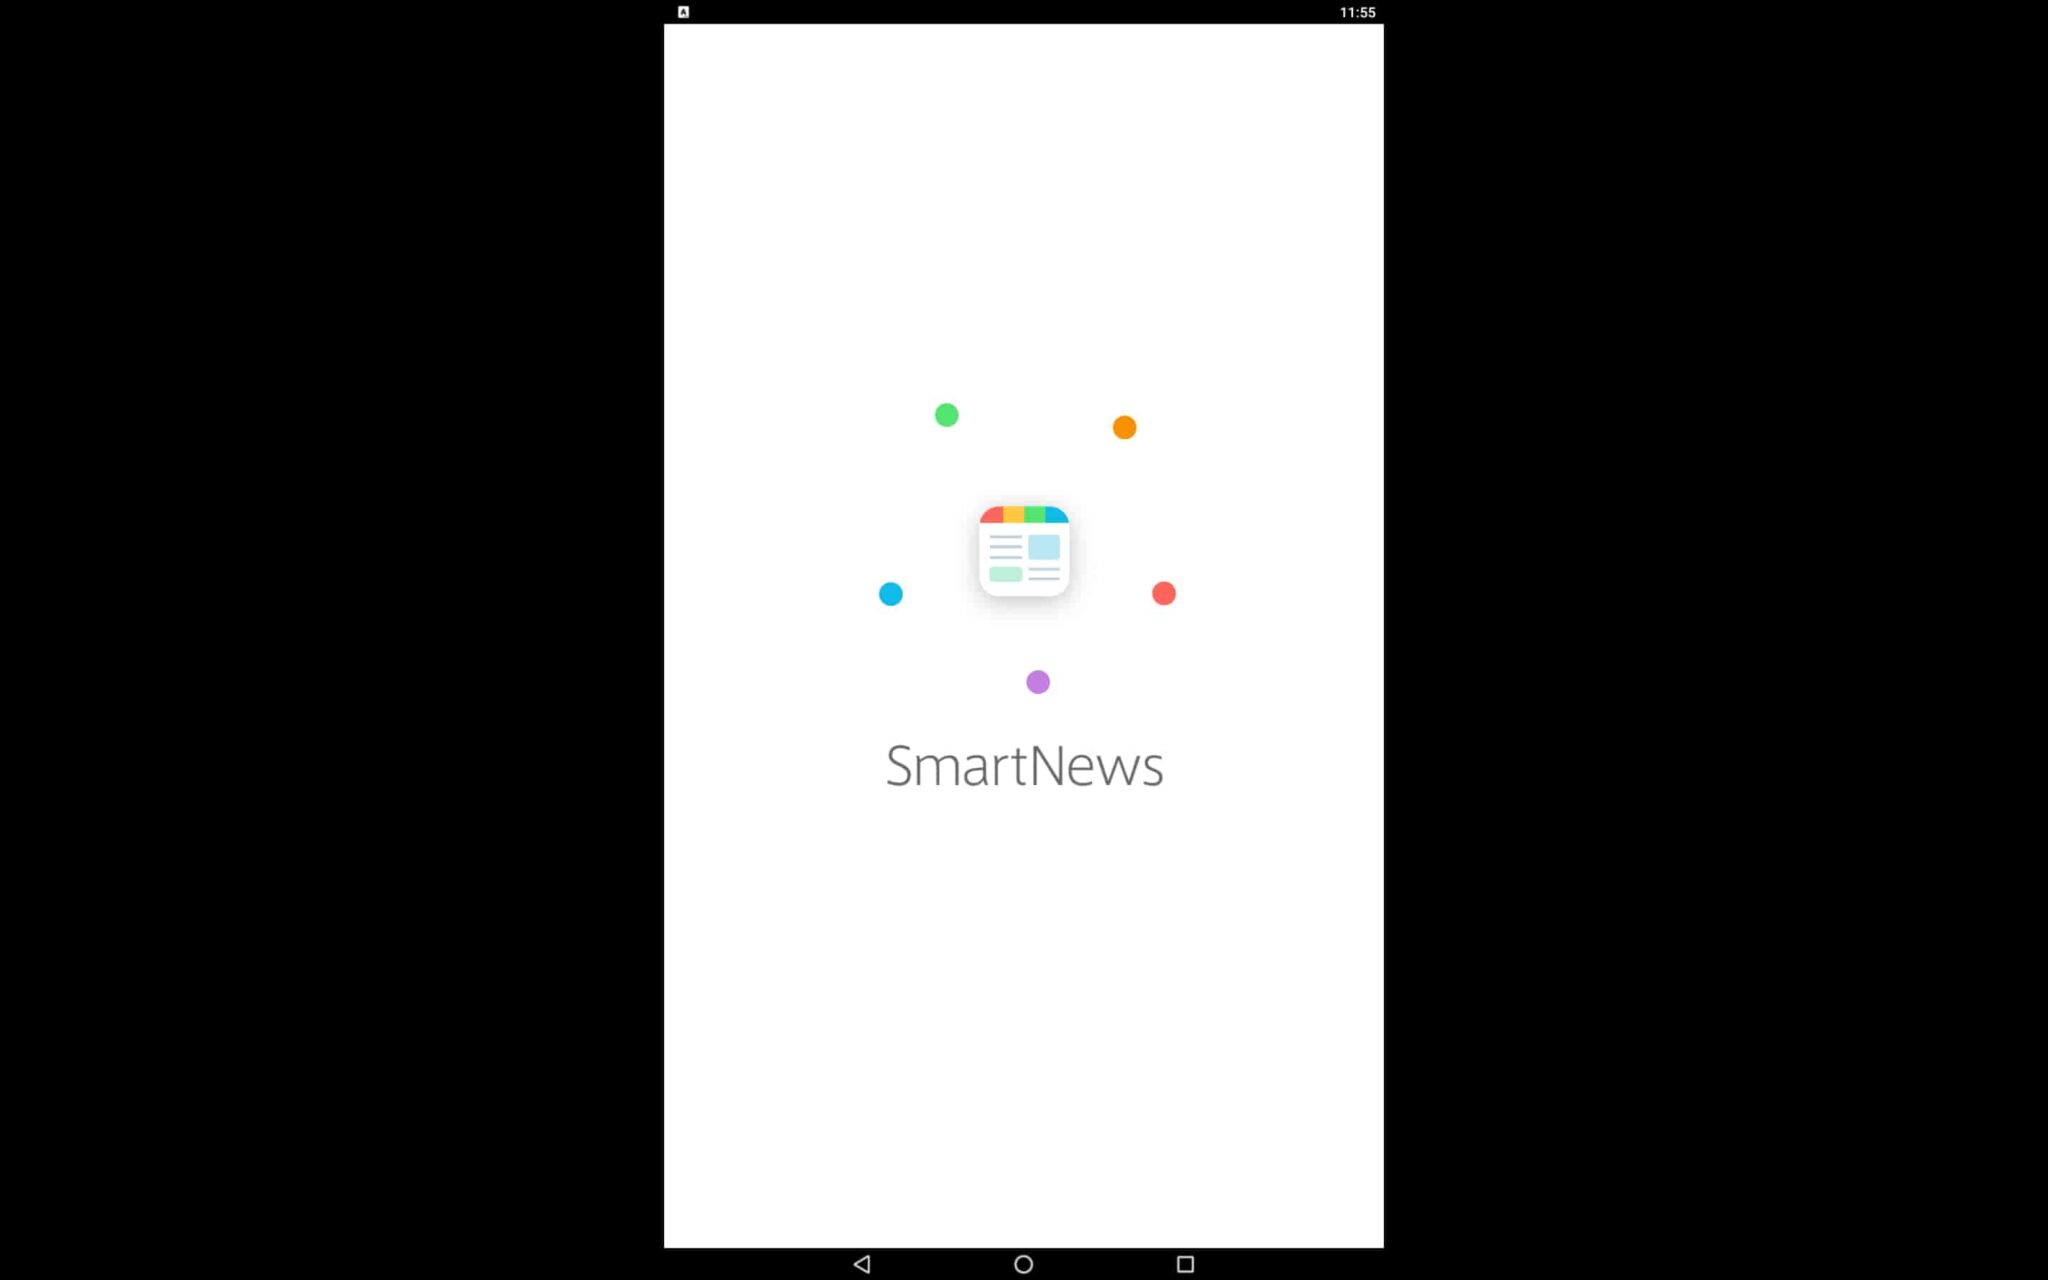 download smartnews com